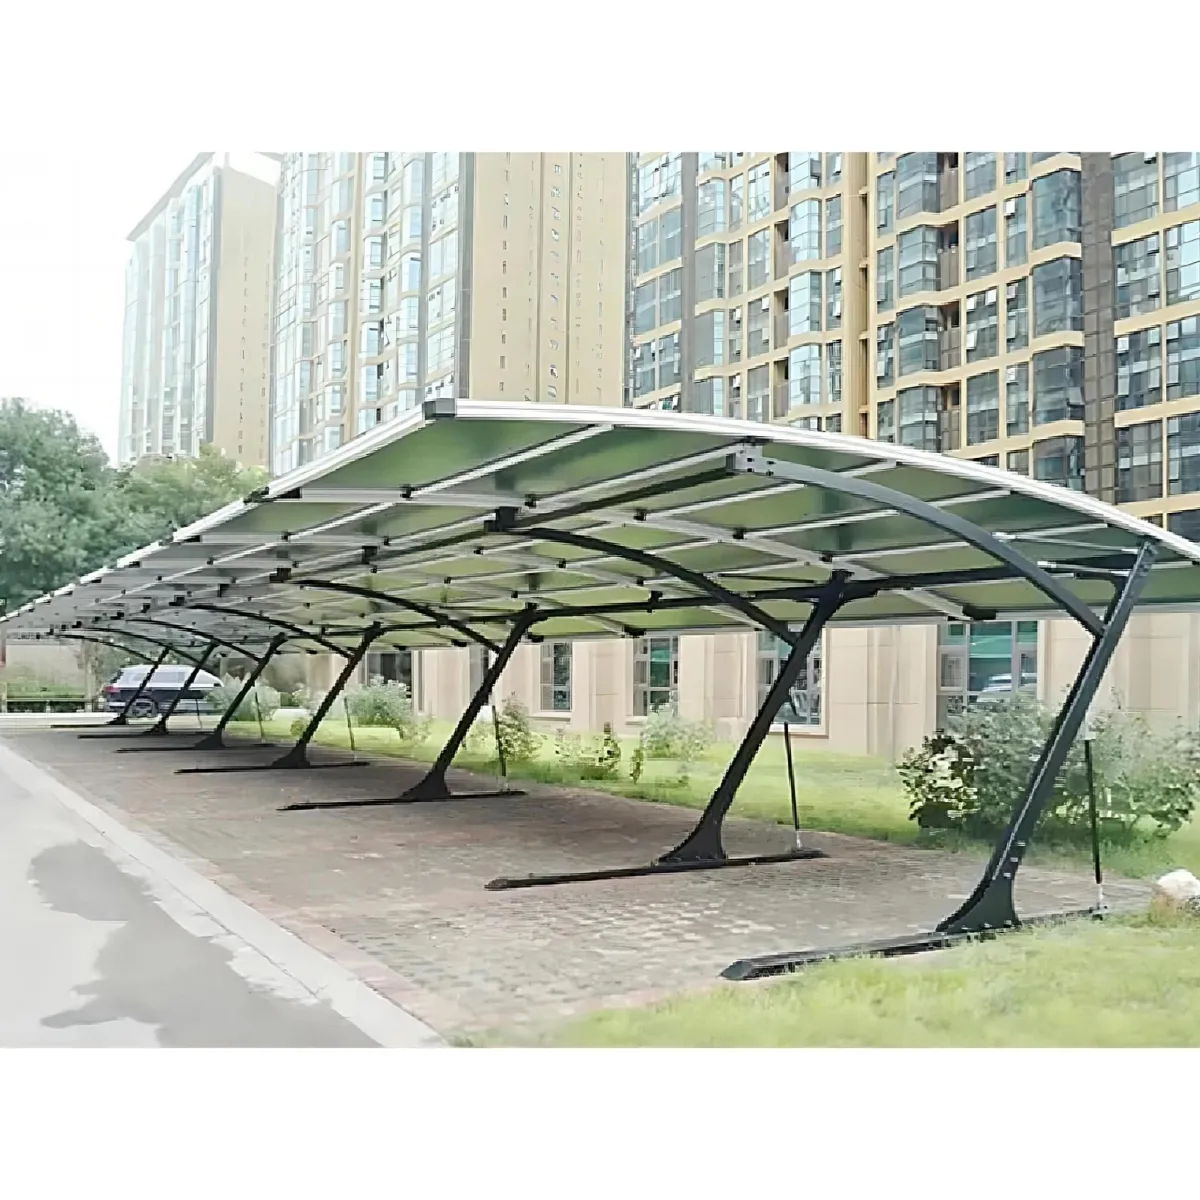 Topsun Commercial Carbon Steel Wasserdichte Solarenergie Carport Montages ystem PV Parks truktur Solar Carport